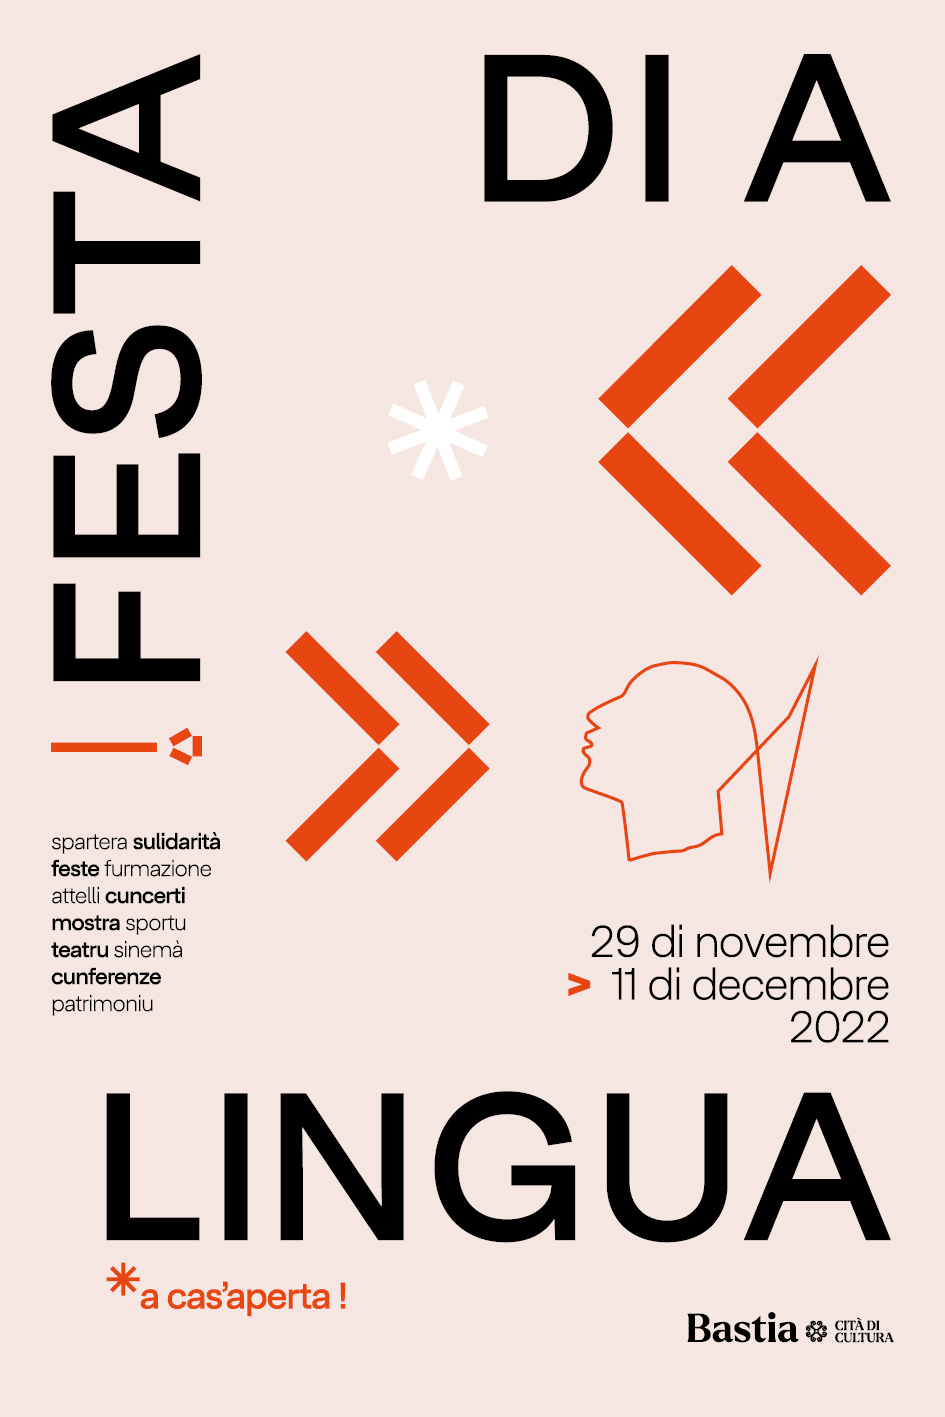 L'édition 2022 di A Festa di a lingua est lancée à Bastia